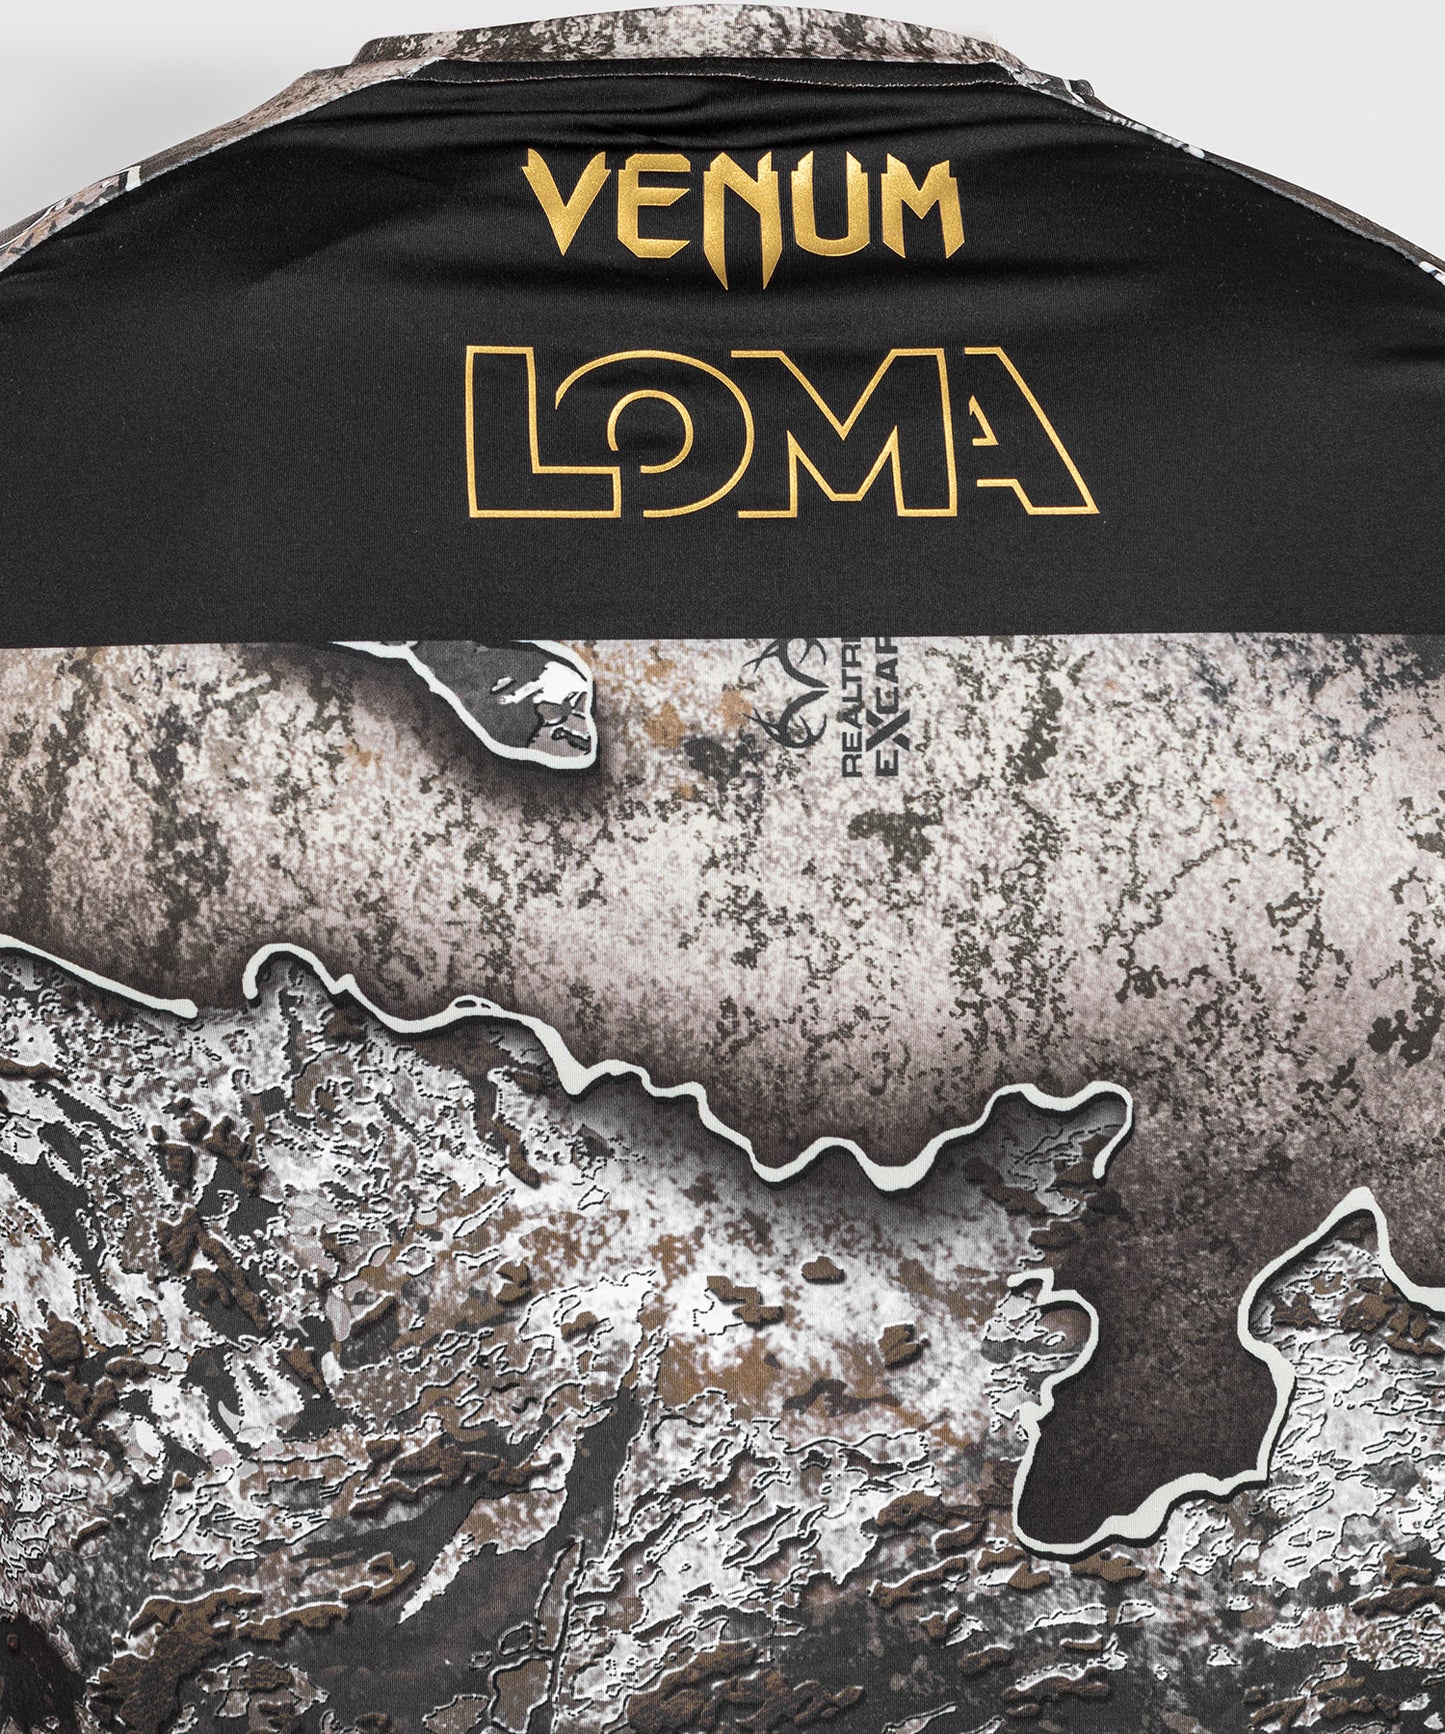 T-shirt Dry Tech Venum x Realtree Loma Officiel - Octobre 2022